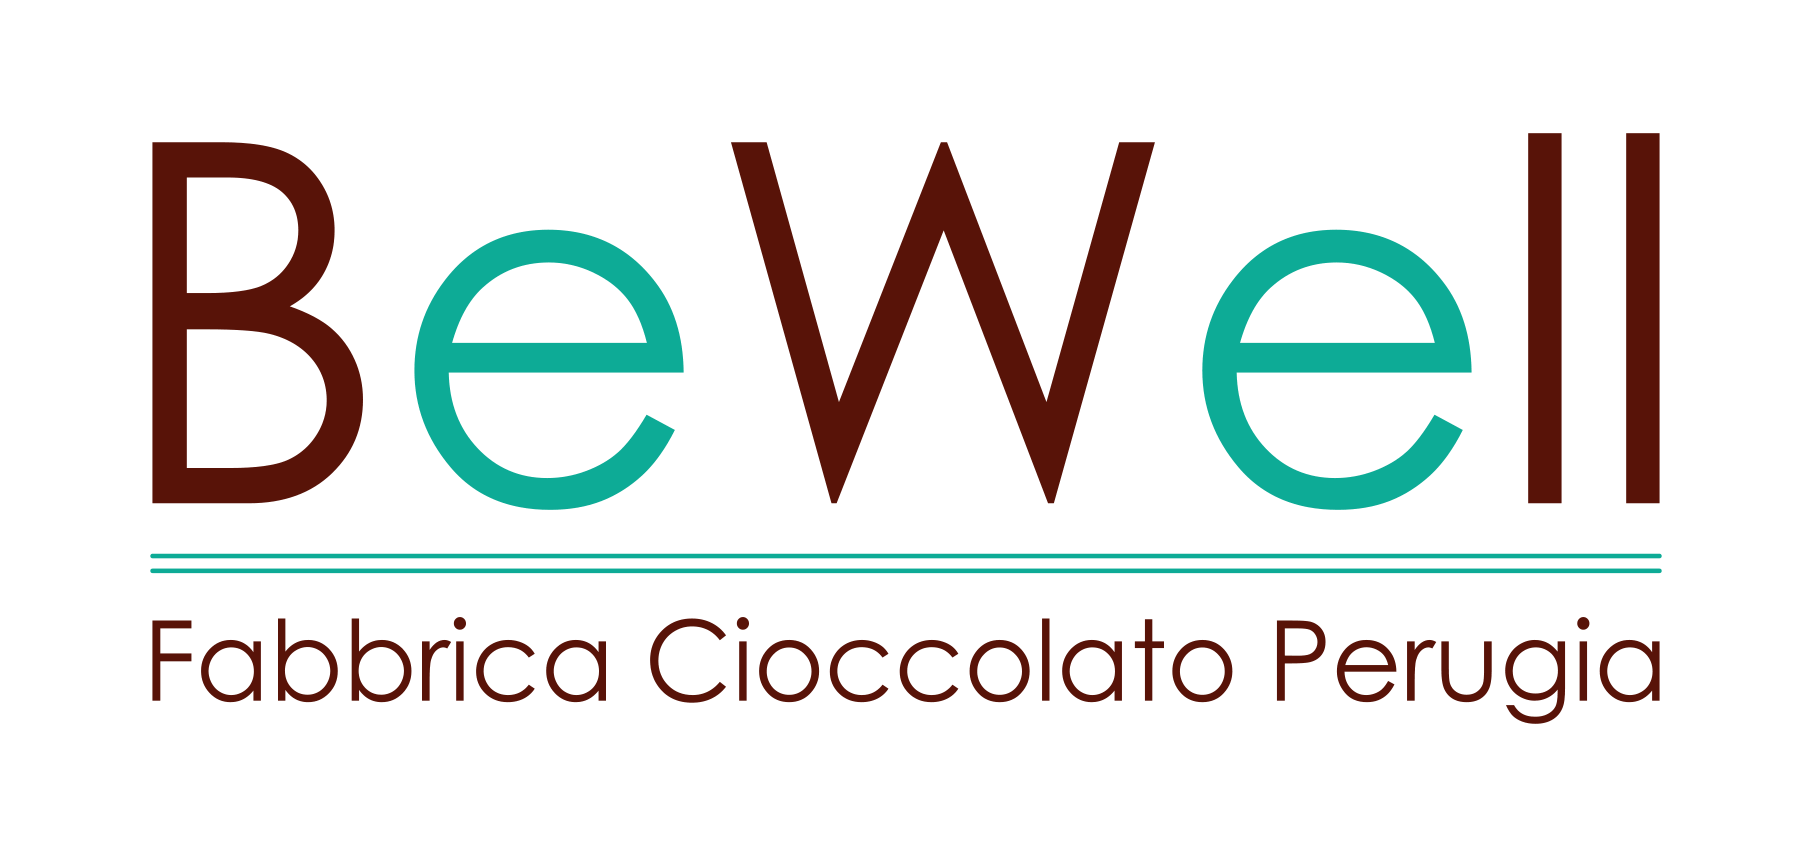 miglior cioccolato perugia - Bewellgroup.it